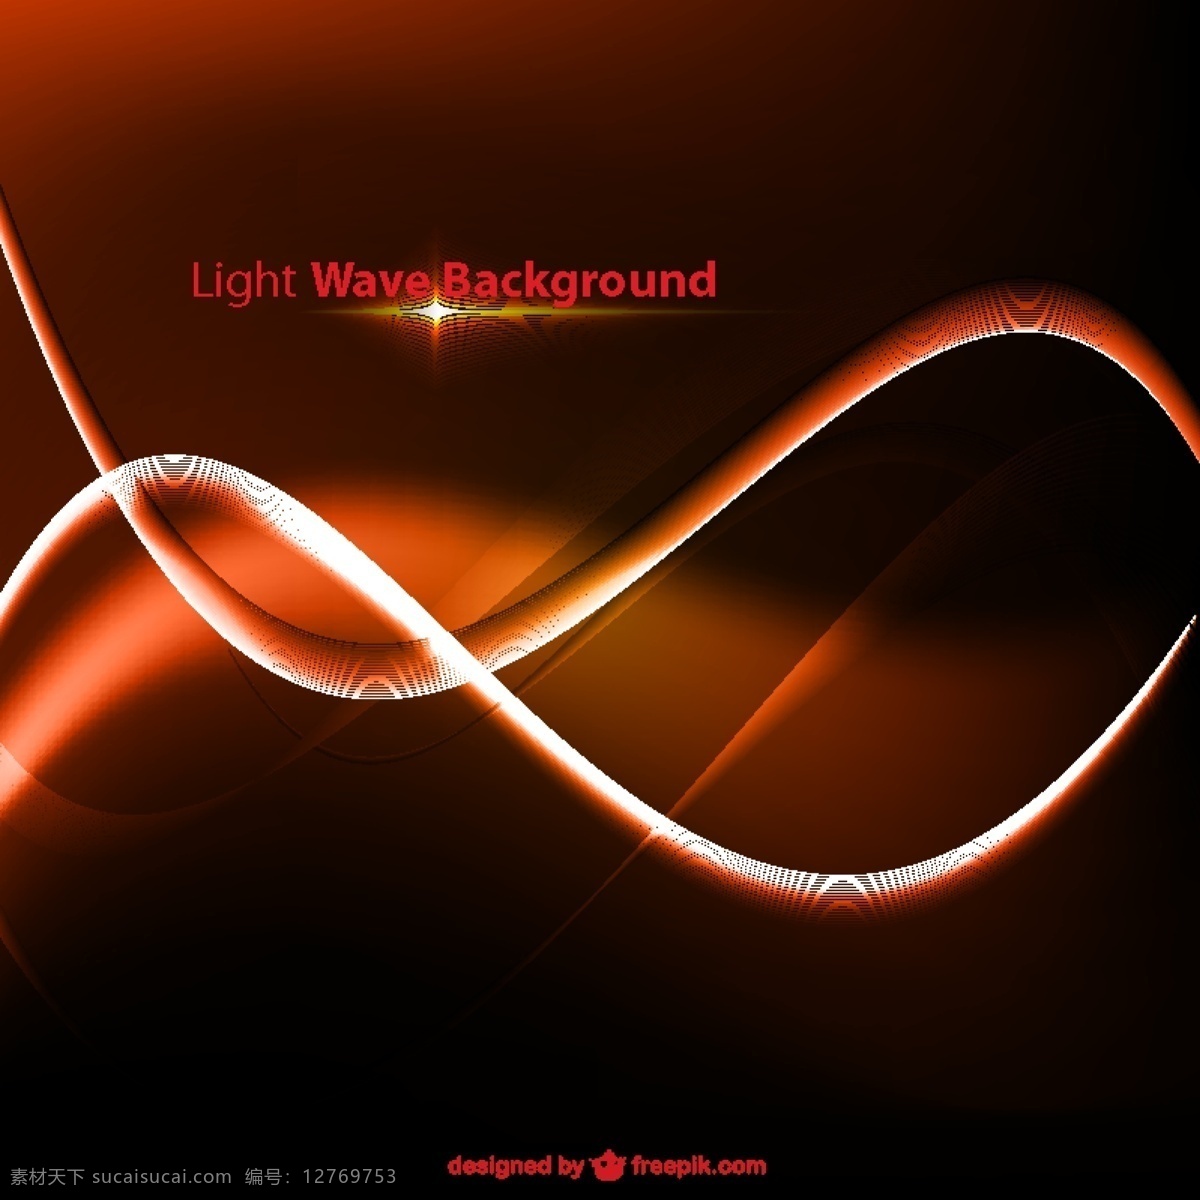 橙色 波浪状 辉光 背景 抽象 光 模板 波形 红 壁纸 图形 介绍 图形设计 形状 发光 抽象设计 黑色